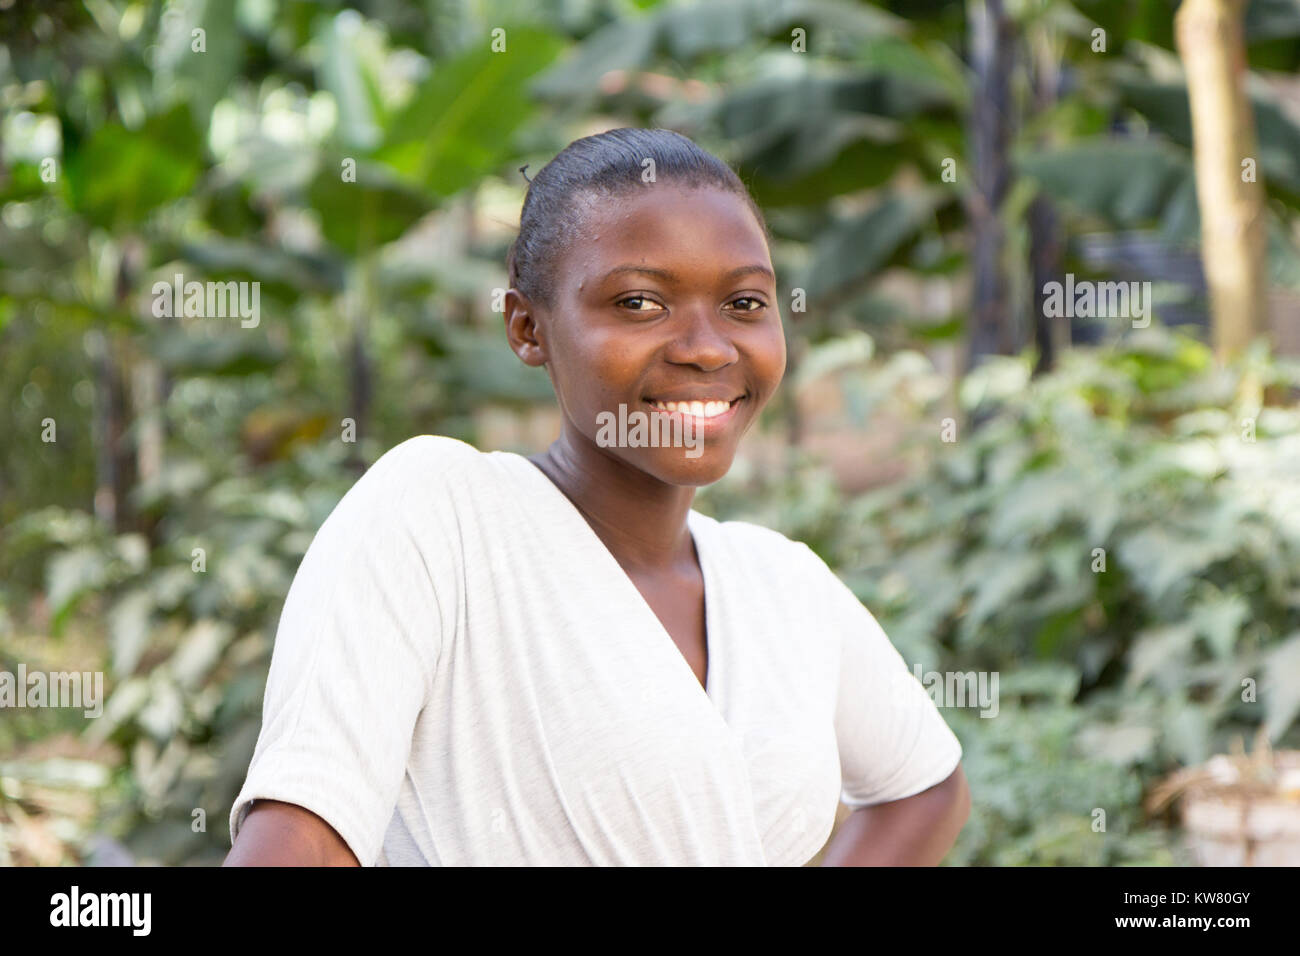 A beautiful smiling young Ugandan woman Stock Photo